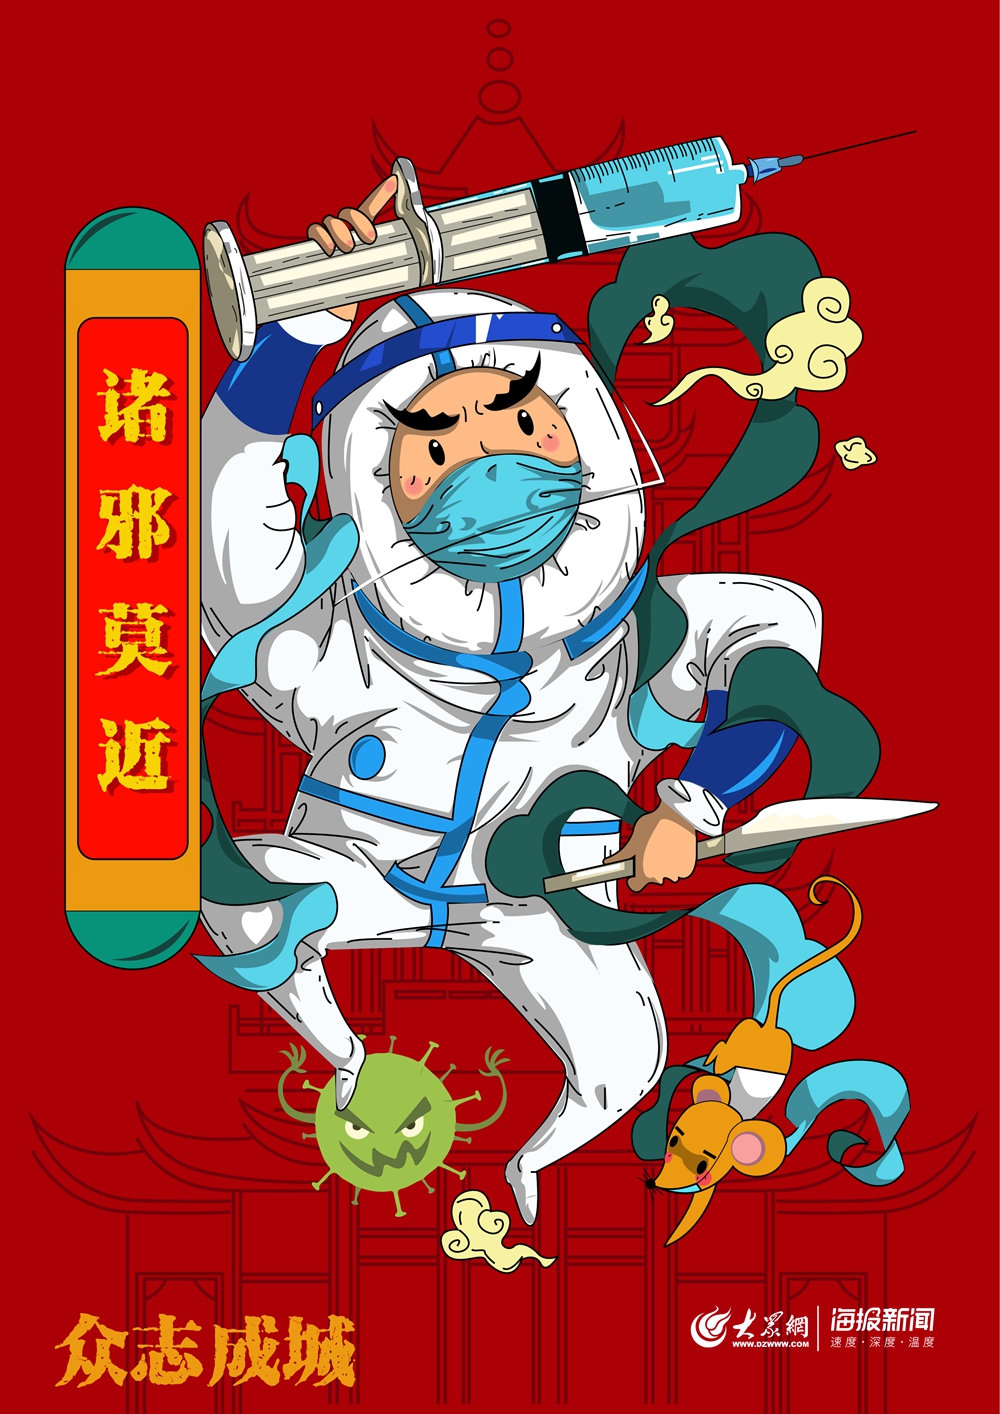 青岛滨海学院师生创意海报为抗击疫情加油